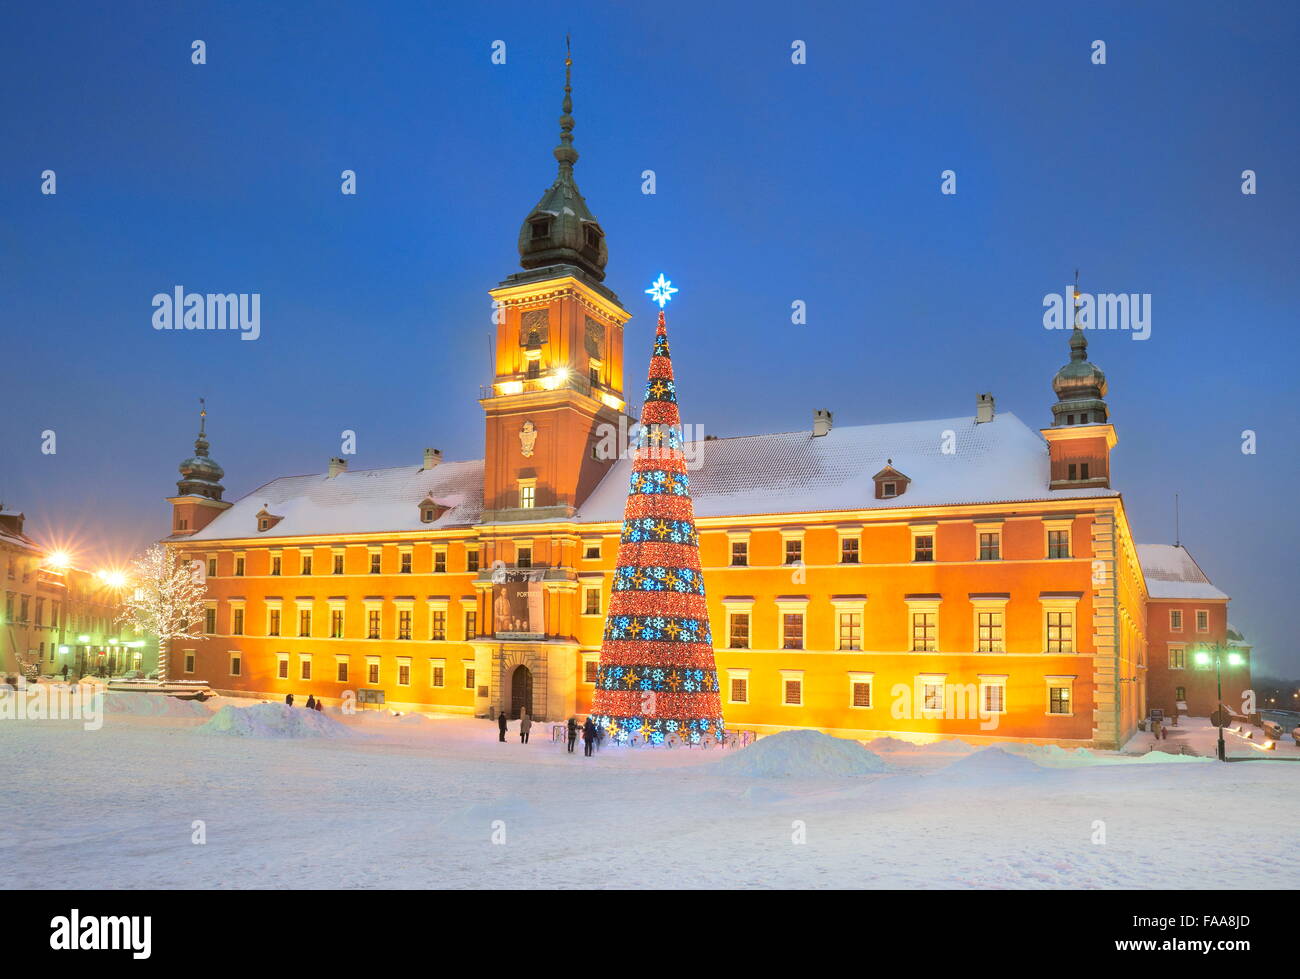 Weihnachtsbaum im Freien, Schlossplatz, Warschau Stadt, Polen Stockfoto